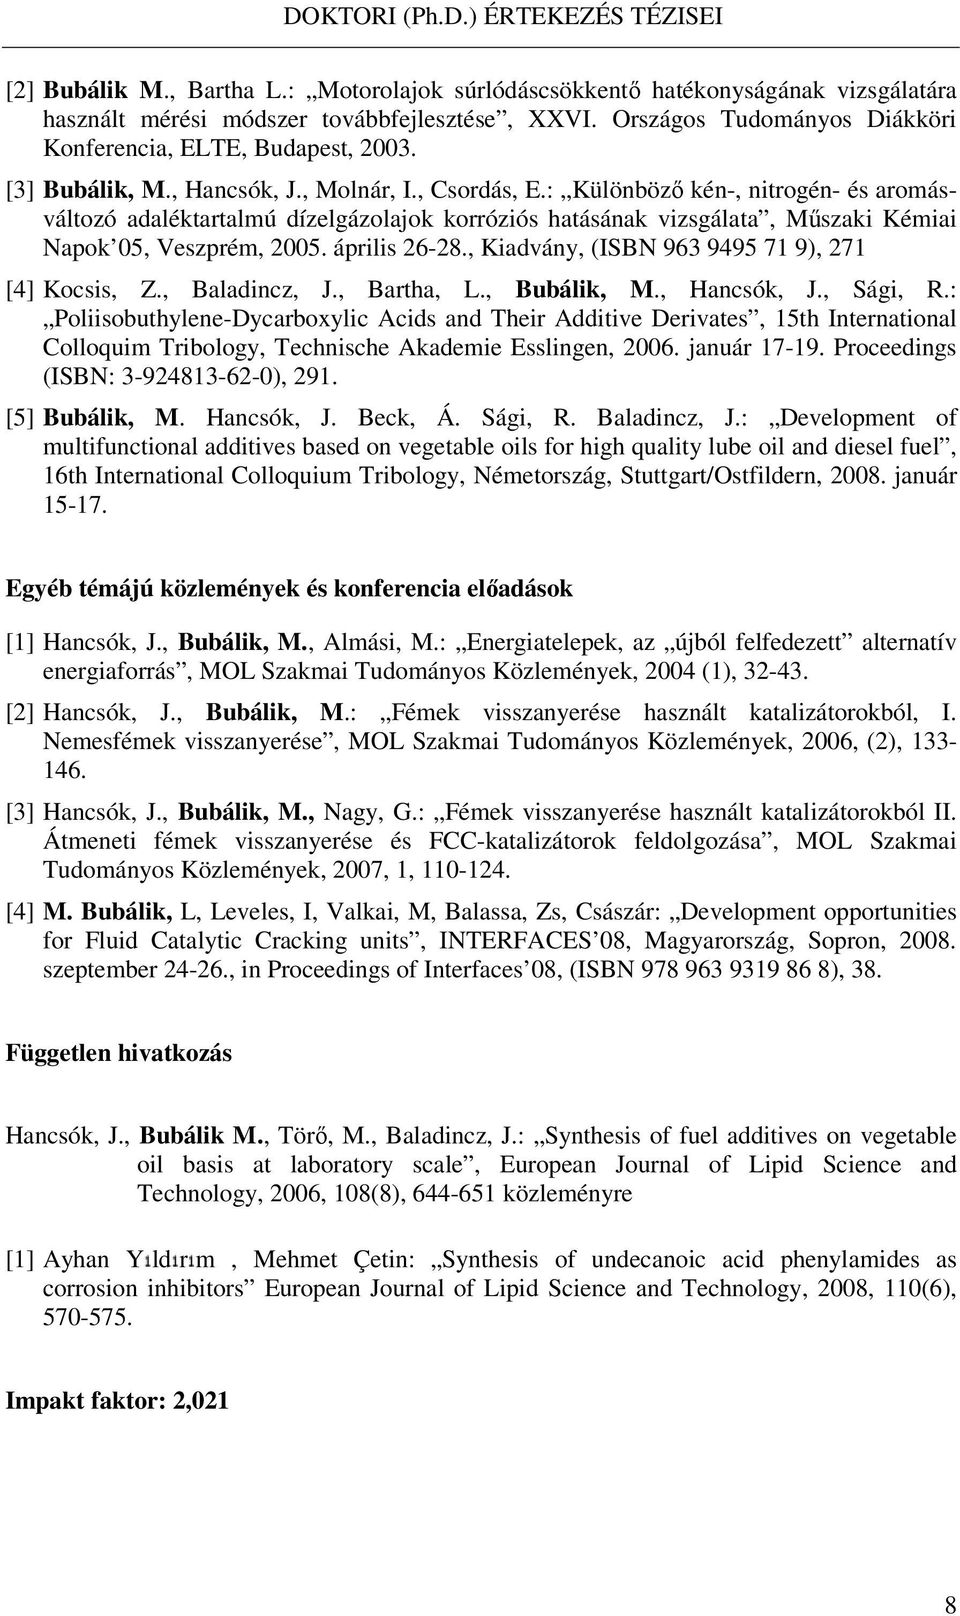 április 26-28., Kiadvány, (ISBN 963 9495 71 9), 271 [4] Kocsis, Z., Baladincz, J., Bartha, L., Bubálik, M., Hancsók, J., Sági, R.